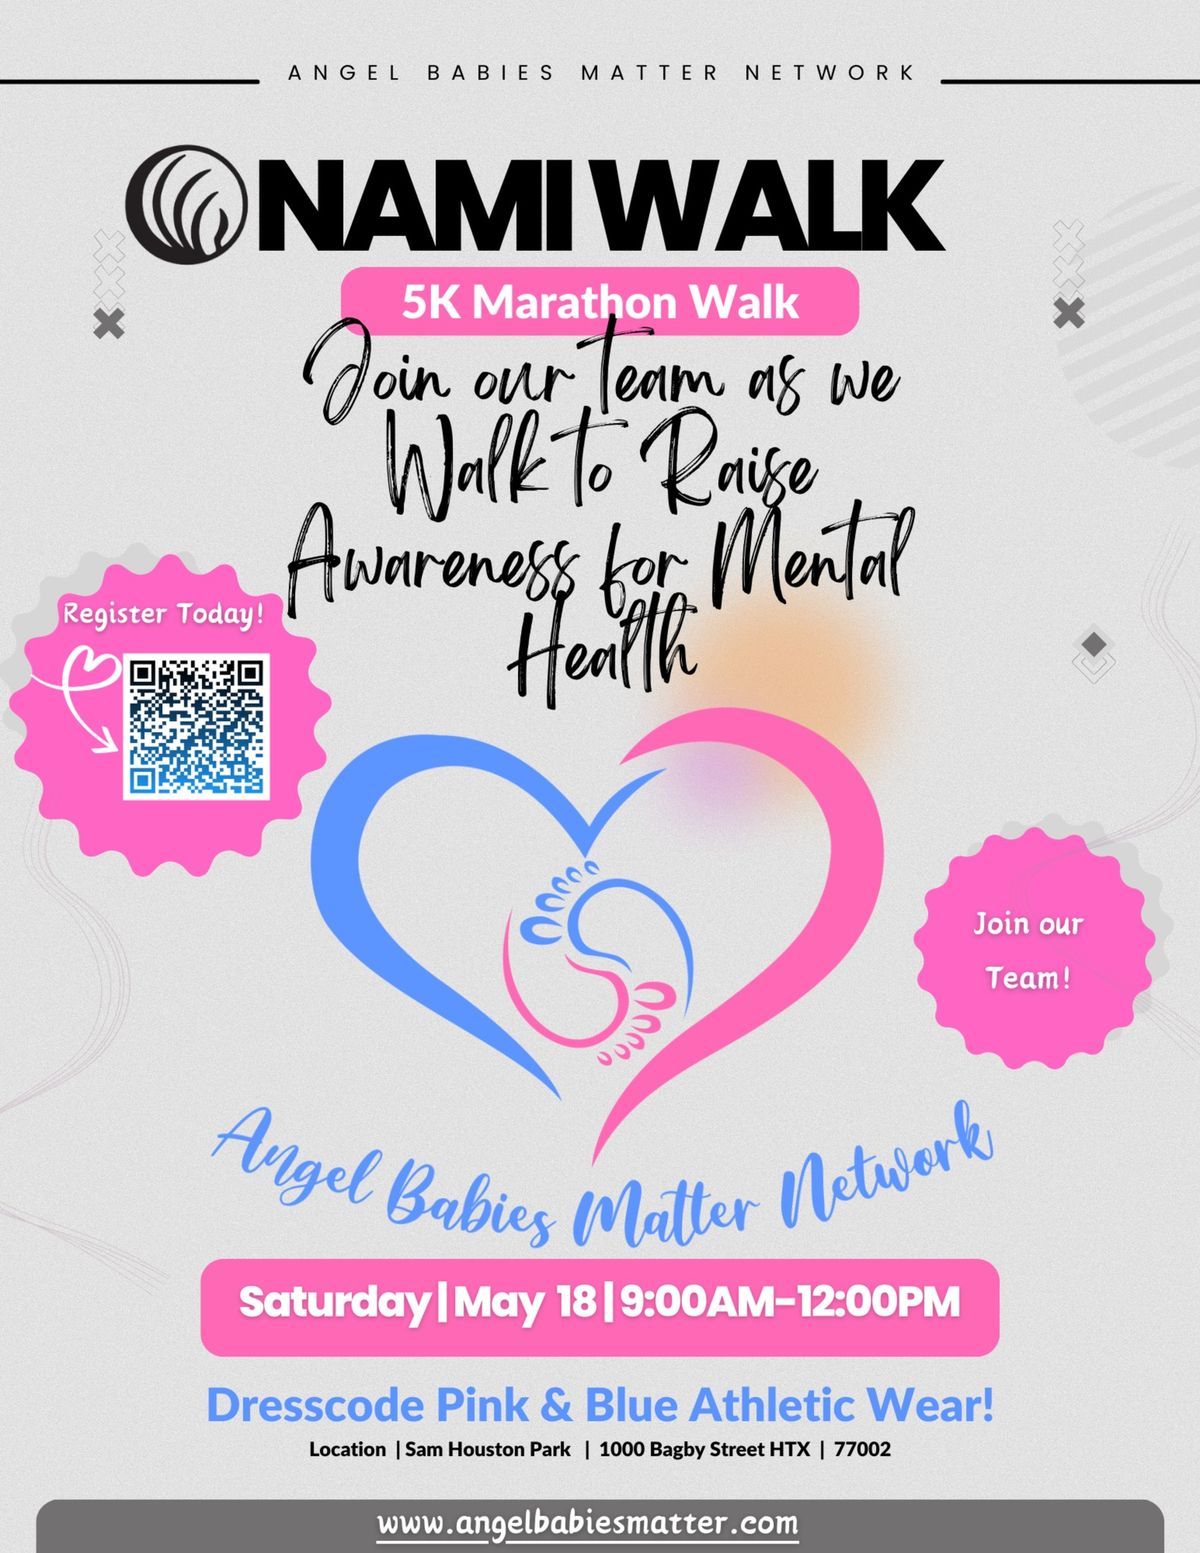 Angel Babies Matter Network NAMI Walk Team